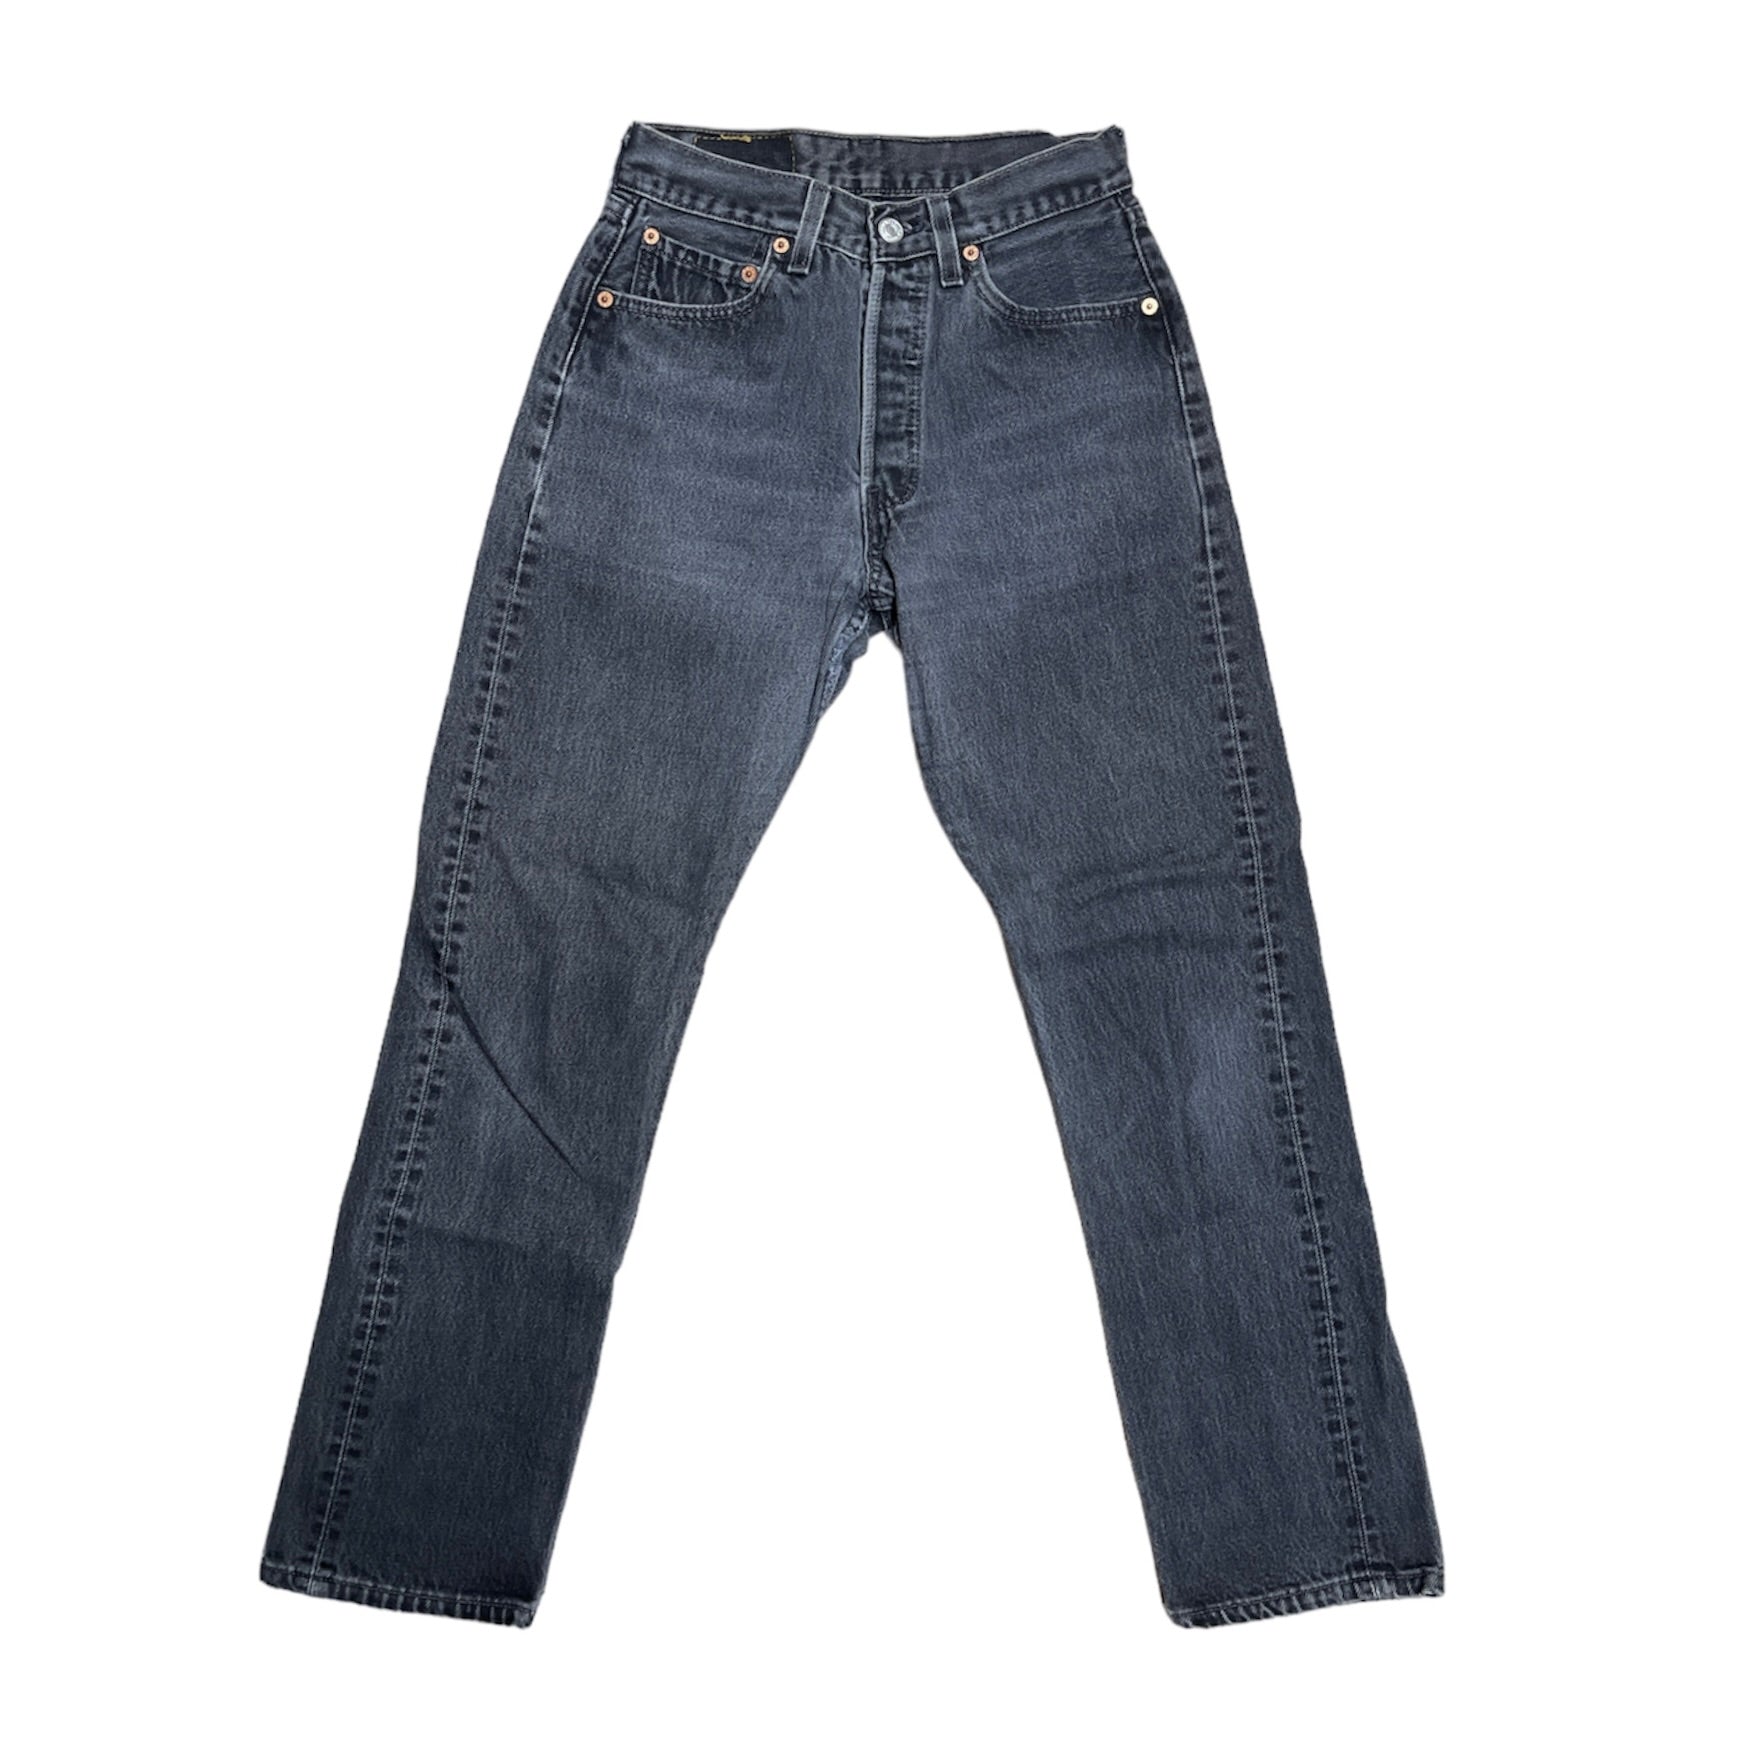 Vintage Levis 501 Black/Grey Jeans (W28/L30)